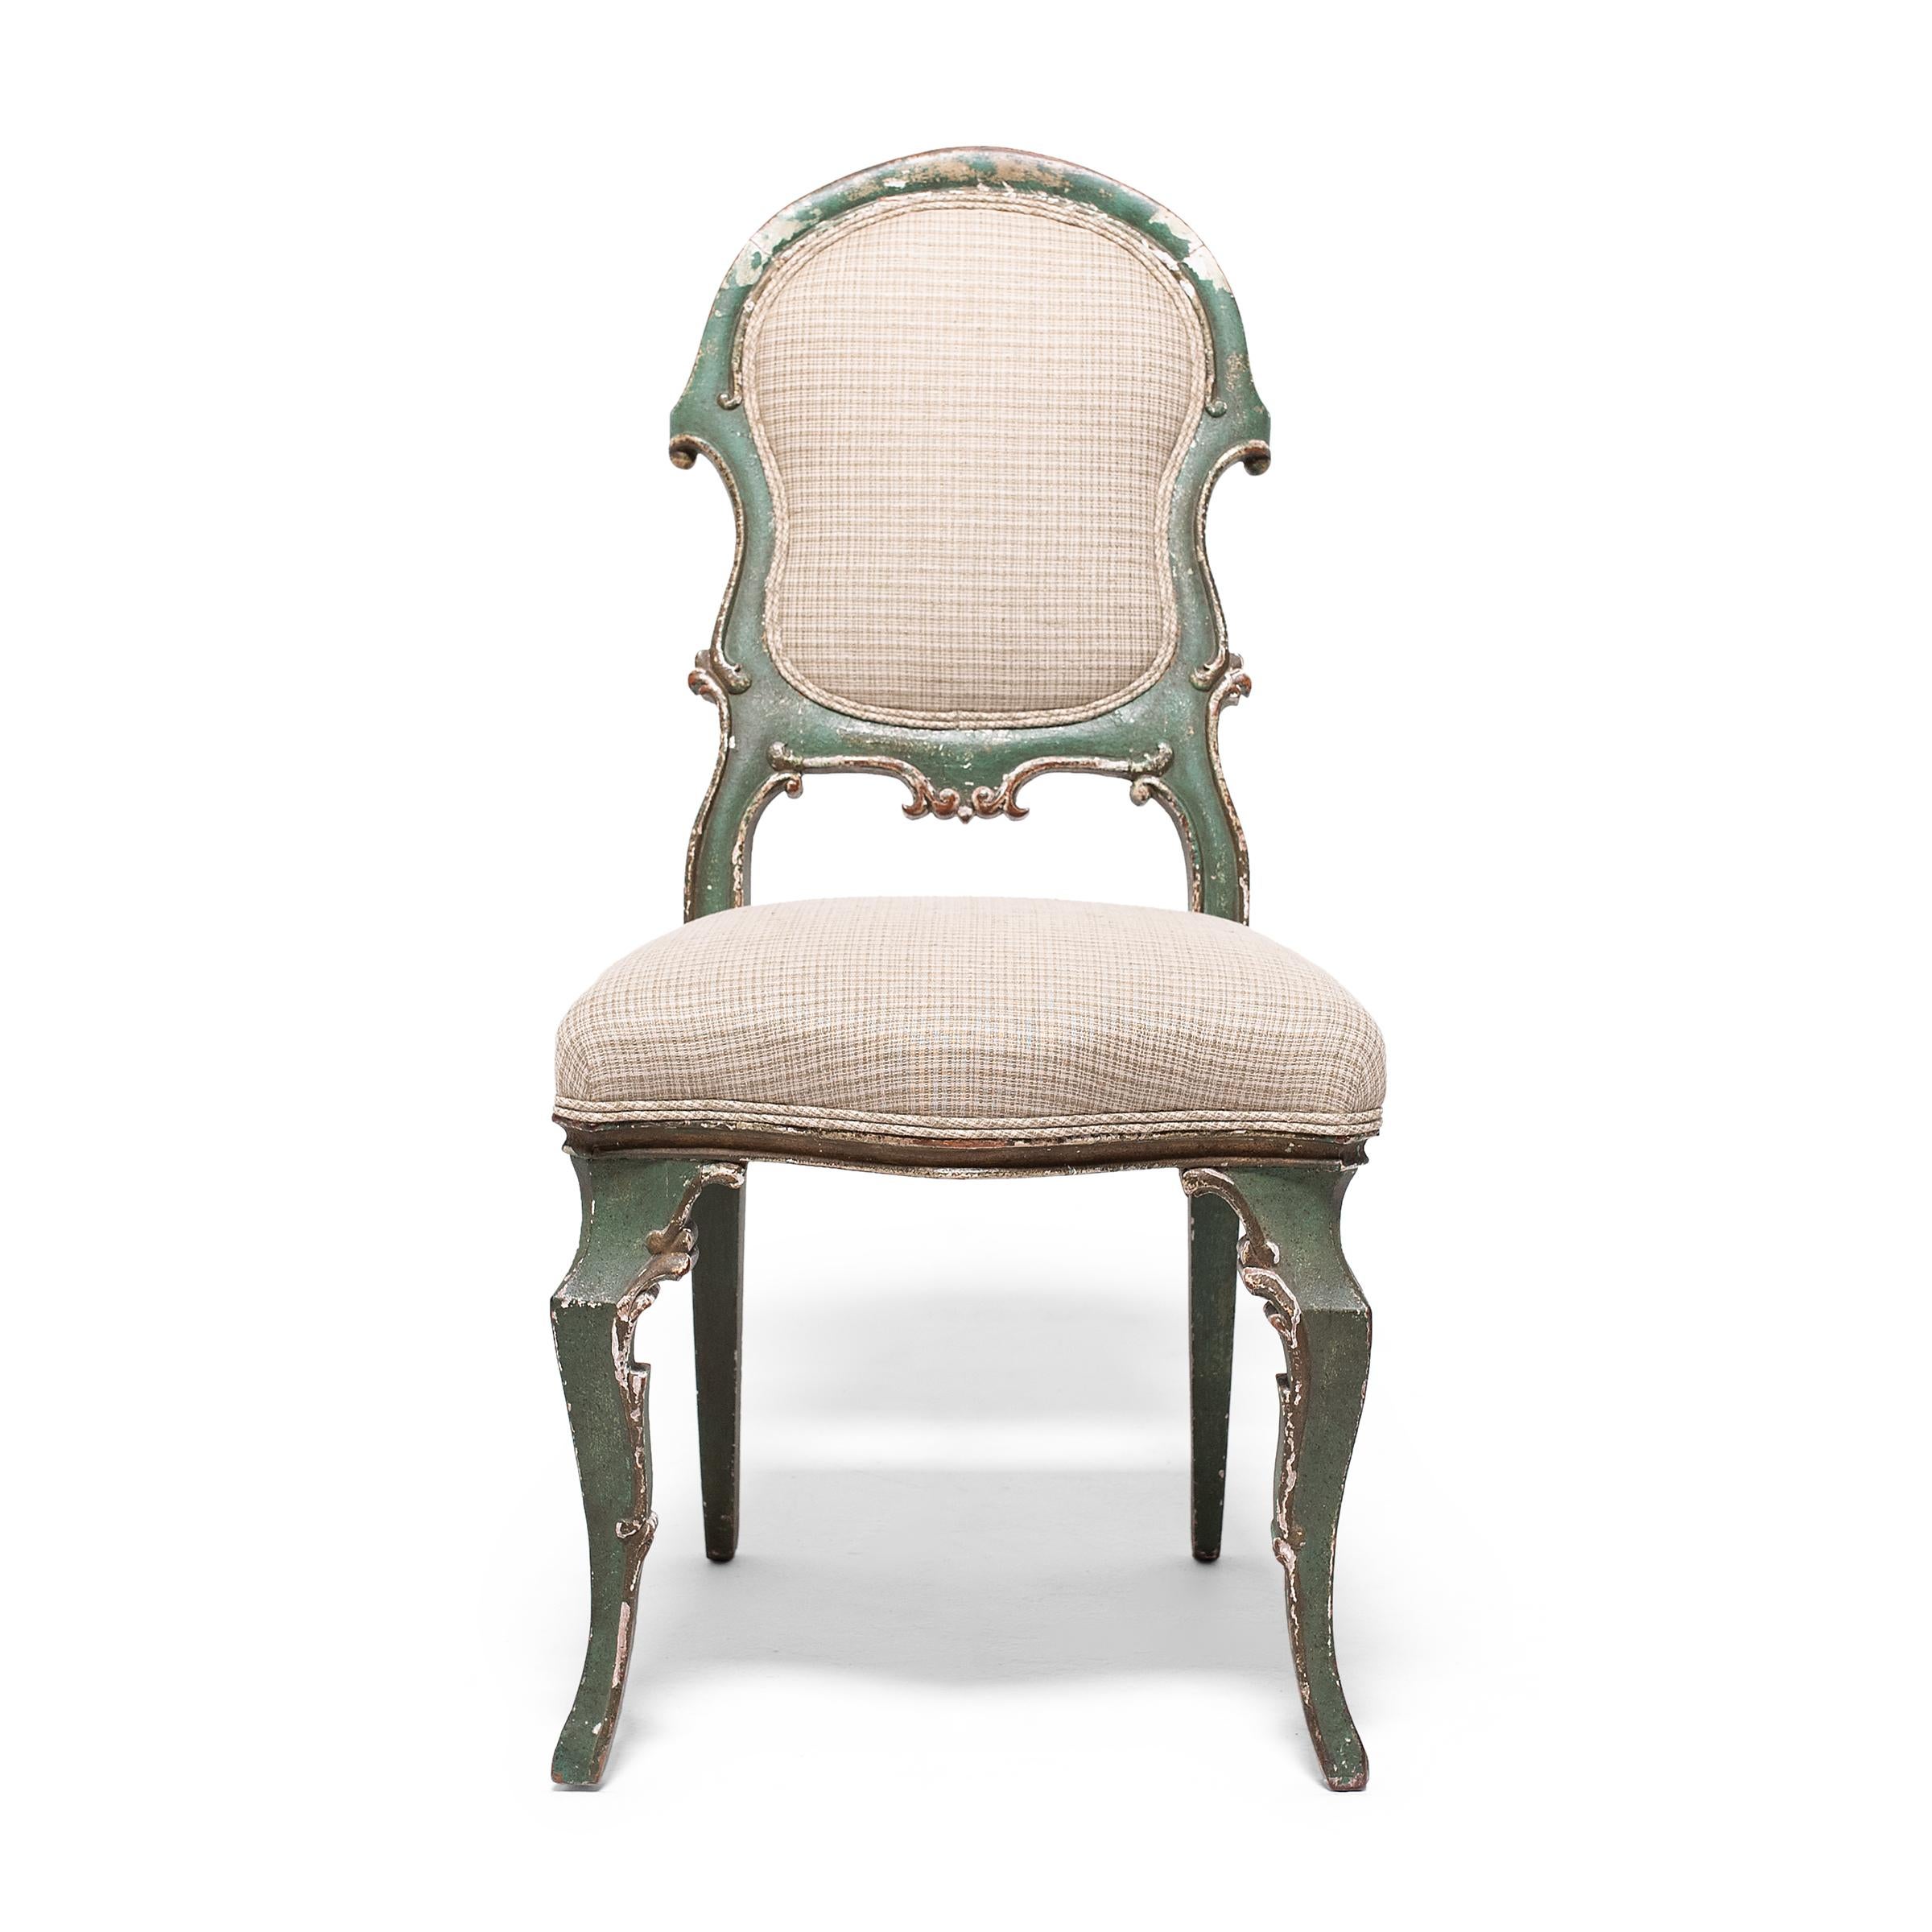 Cette chaise de salle à manger rembourrée recrée à merveille les sièges délicats et féminins des meubles européens des XVIIe et XVIIIe siècles, conçus dans le style rococo vénitien et Louis XV. Datée du début du XIXe siècle, cette chaise présente